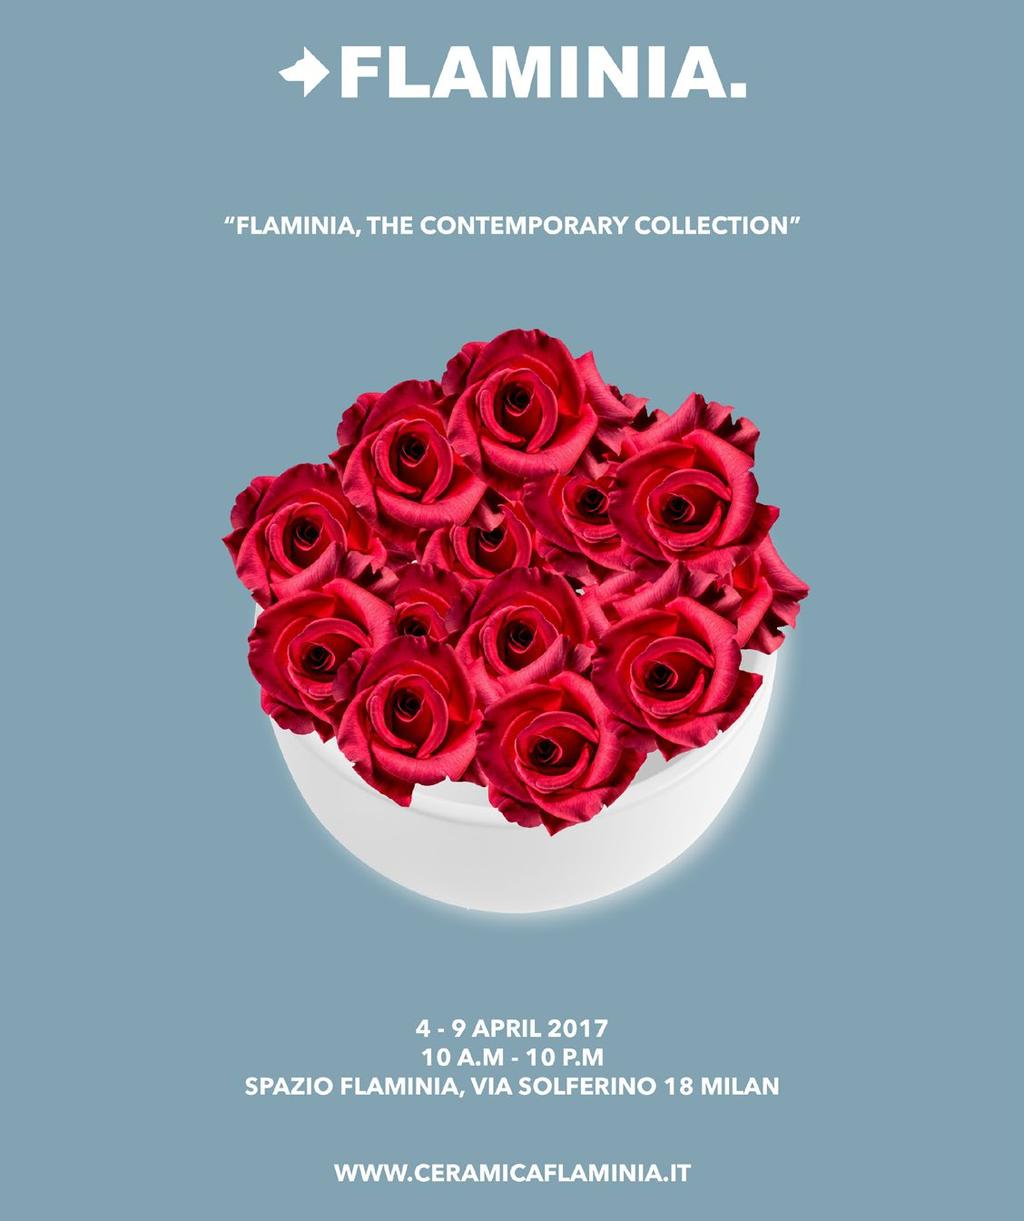 Fuori Salone 2017 Flaminia, the contemporary collection Flaminia's historic showroom in Via Solferino